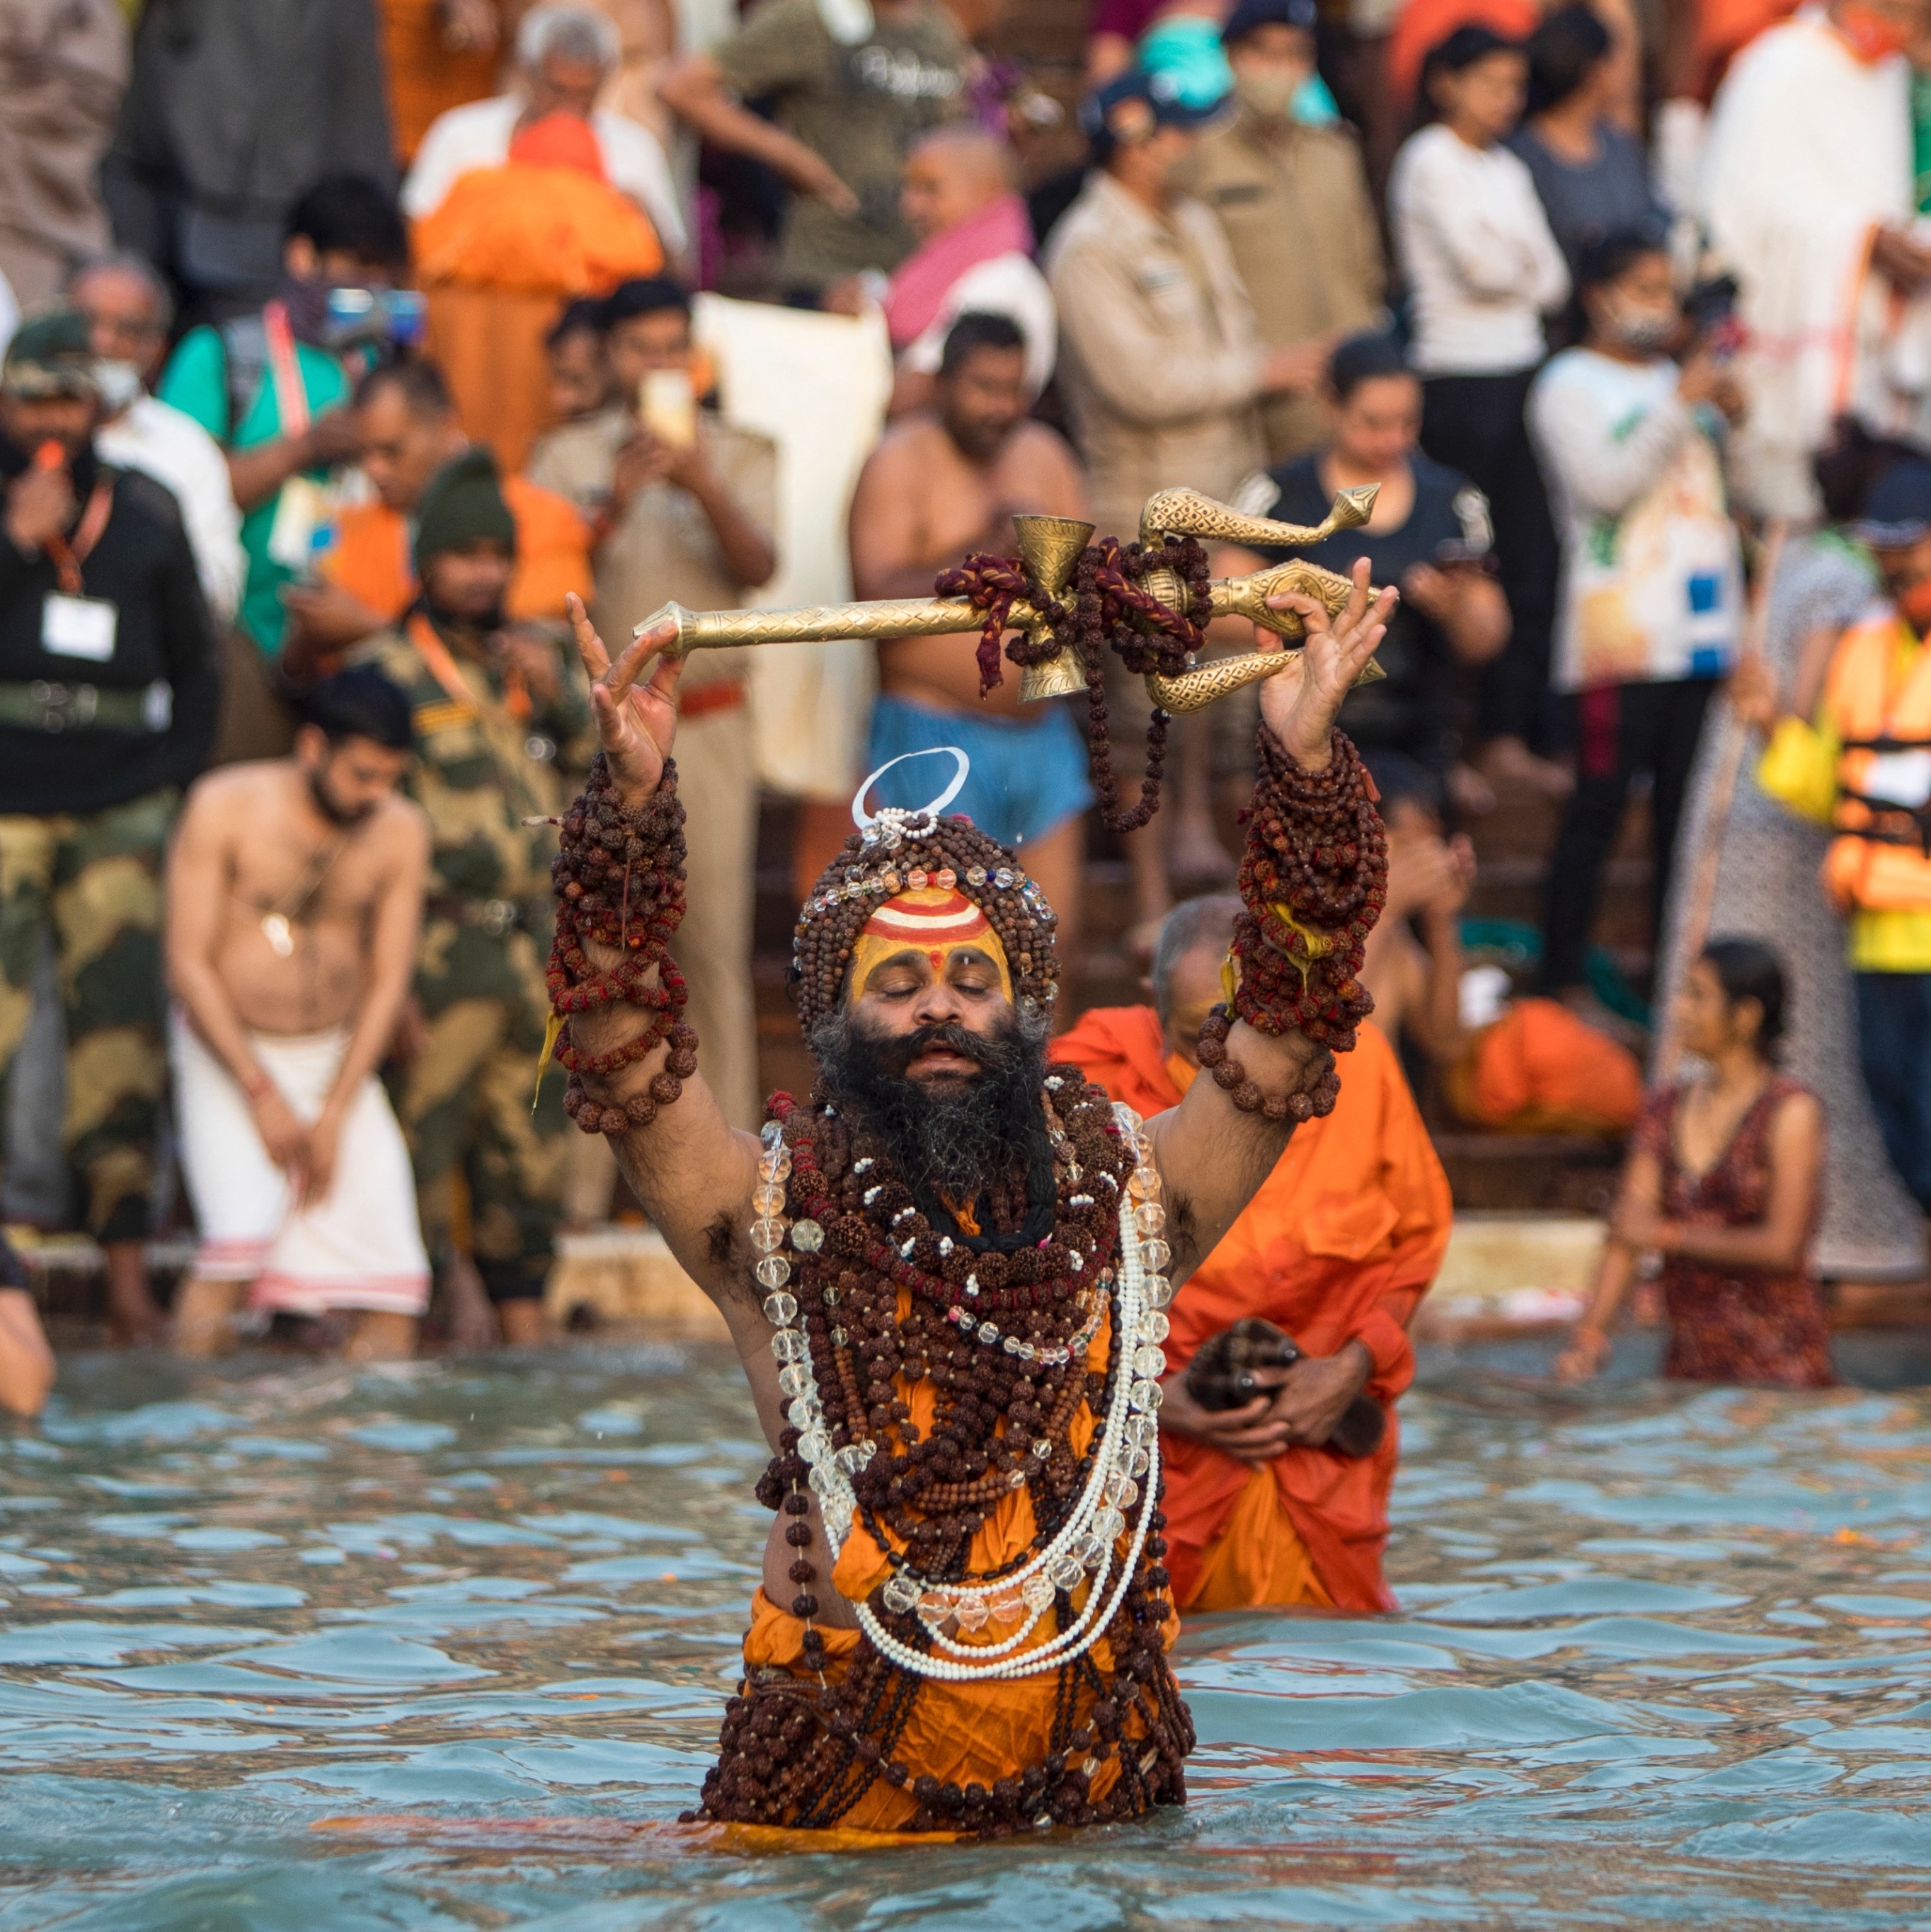 Festival Indiano chega a São Paulo com atrações imperdíveis